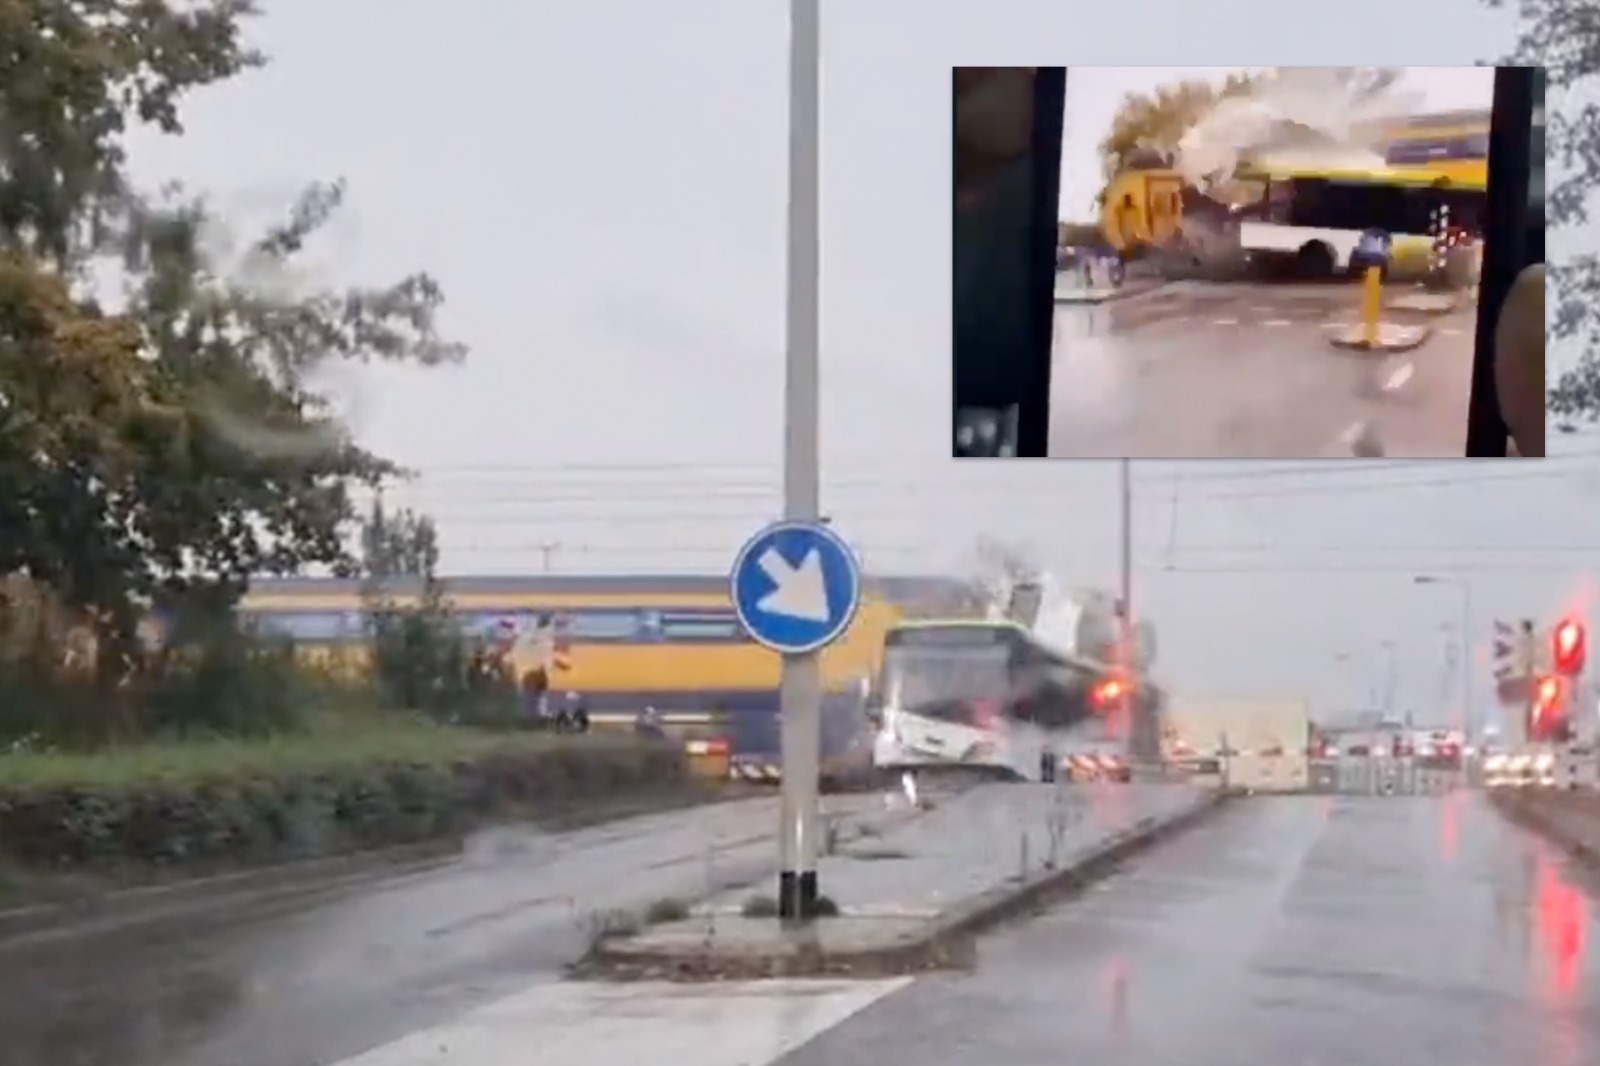 UPDATE VIDEO’S Passagierstrein ramt bus in botsing, bus doormidden gebroken